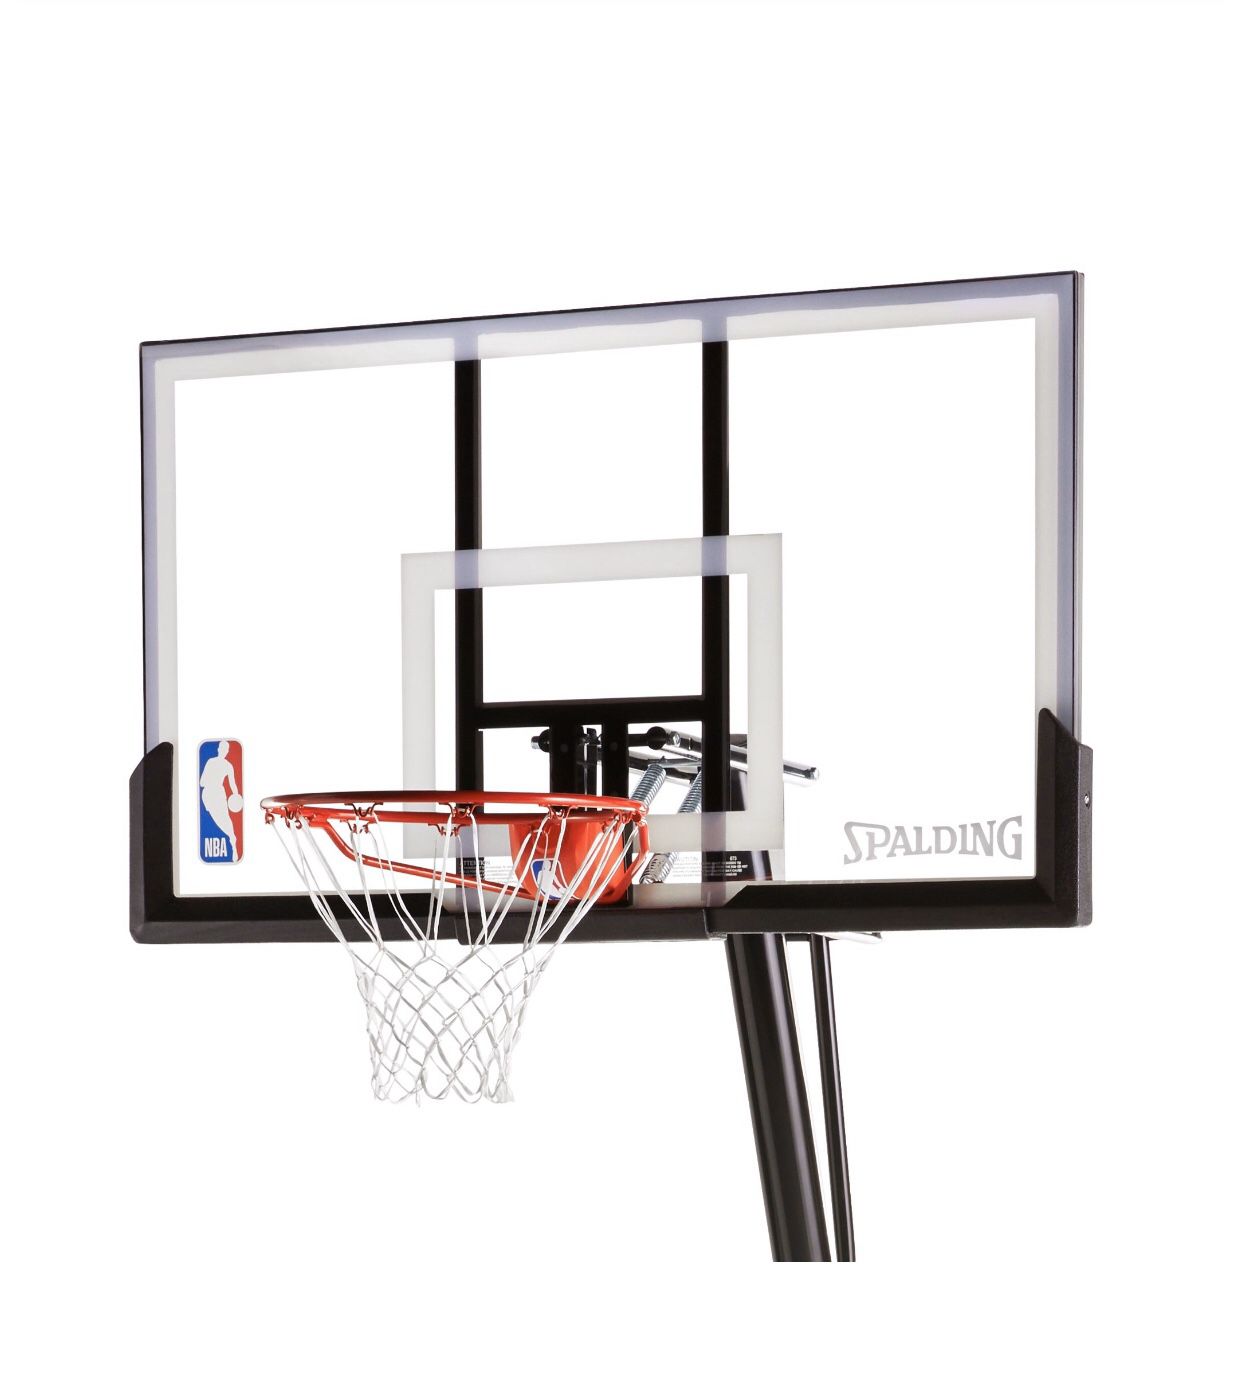 Spalding NBA 54" Portable Angled Basketball Hoop